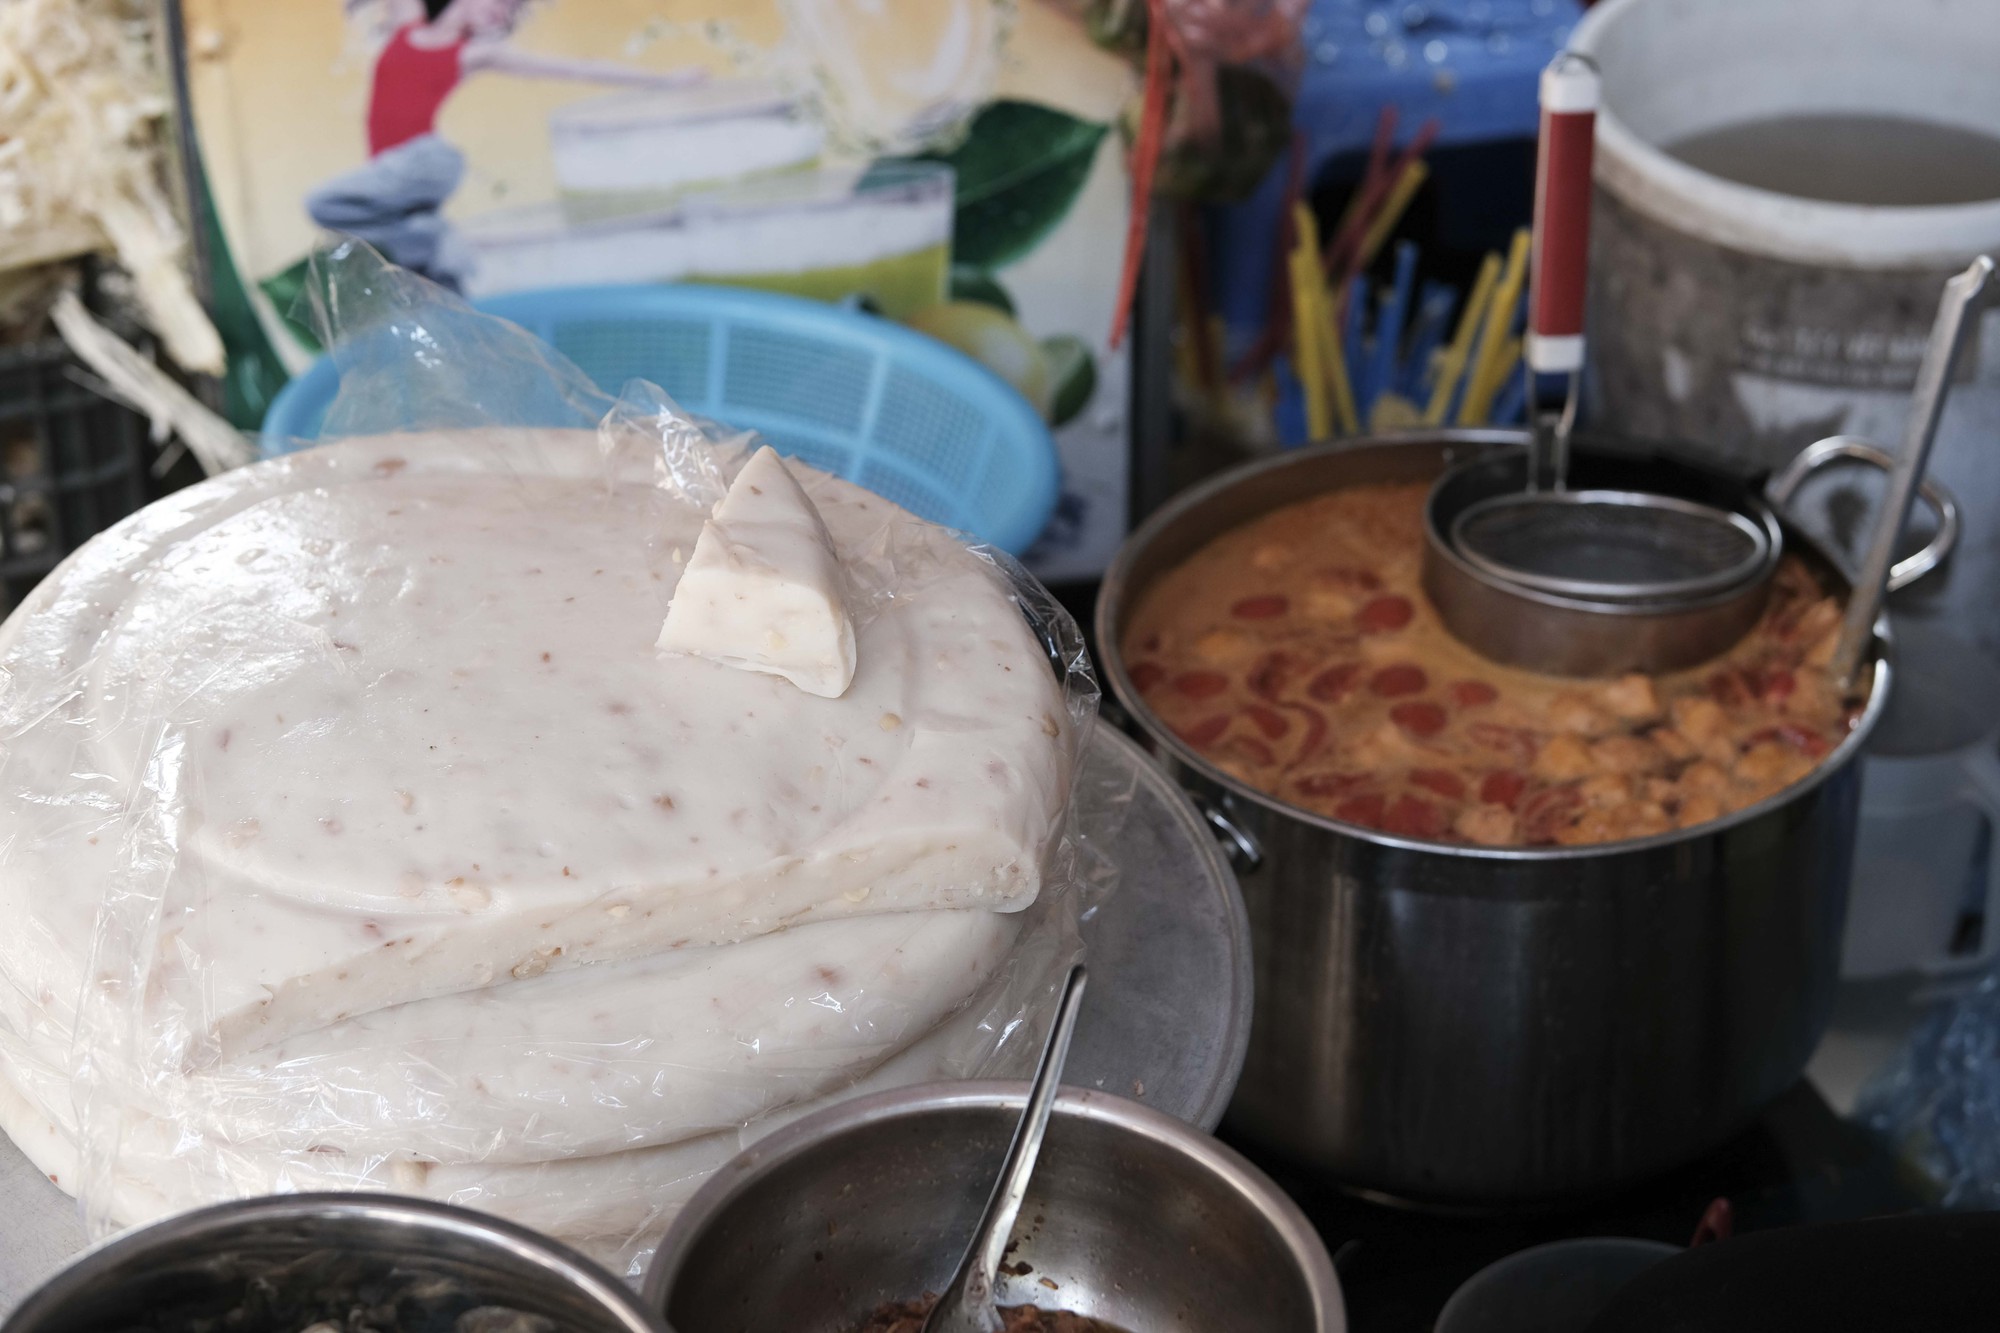 Hàng bánh đúc riêu chỉ bán 5 ngày duy nhất trong tháng ở Hà Nội, khách thèm ăn cũng phải chờ  - Ảnh 1.